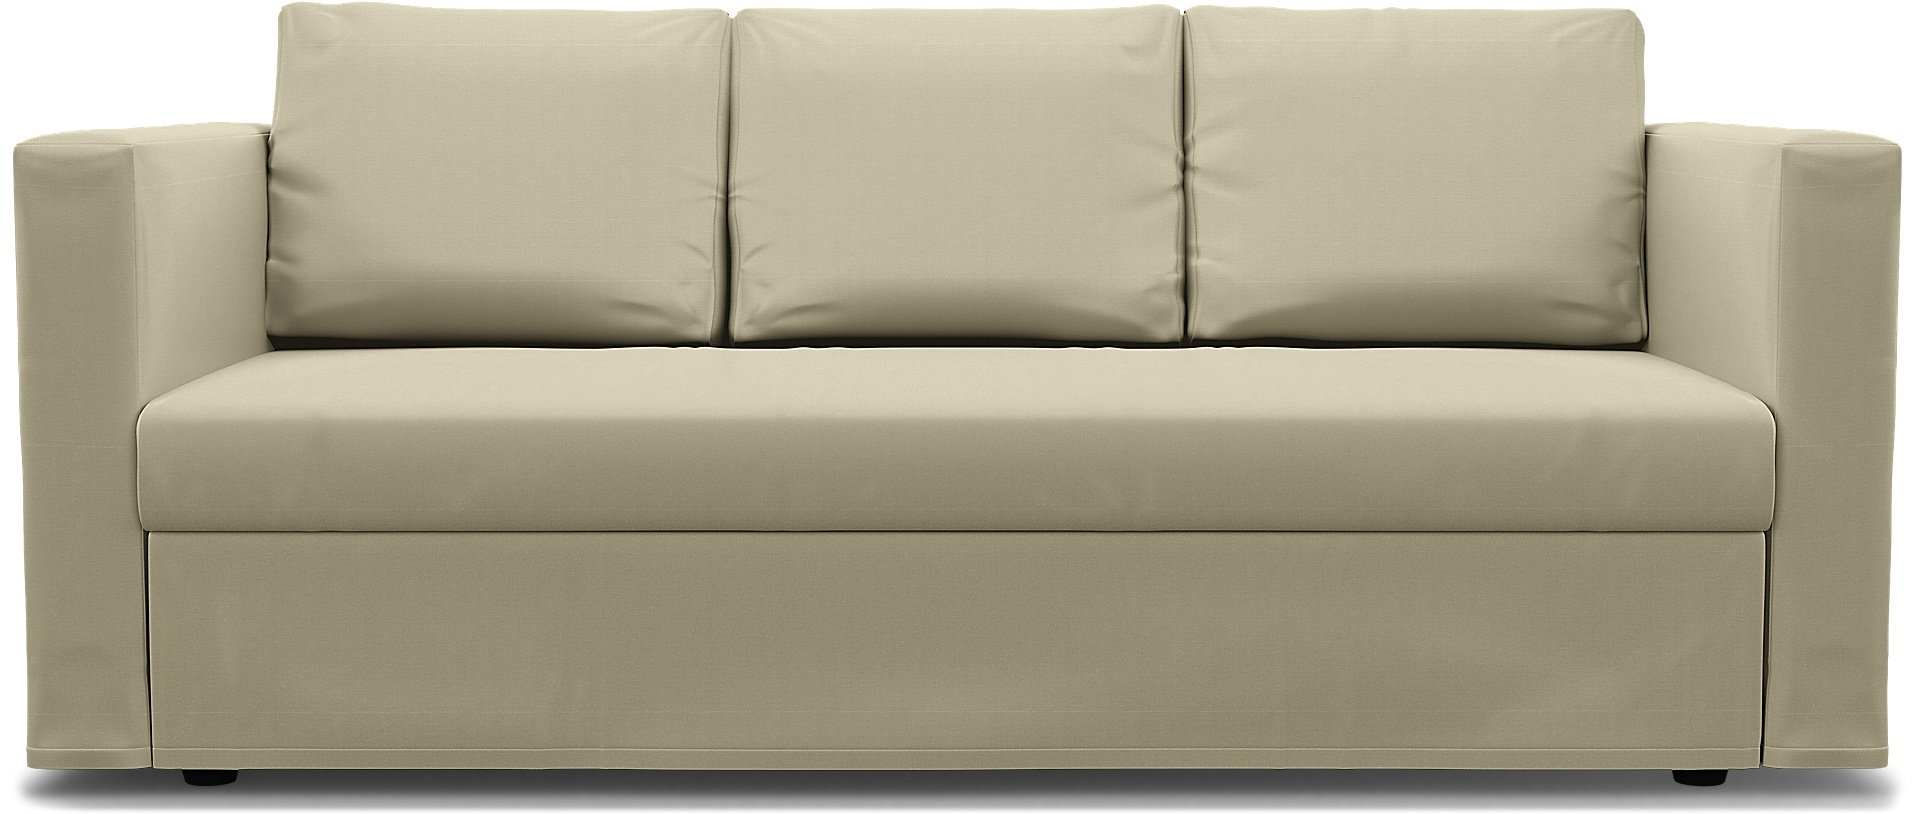 IKEA - Friheten 3 Seater Sofa Bed Cover, Sand Beige, Cotton - Bemz